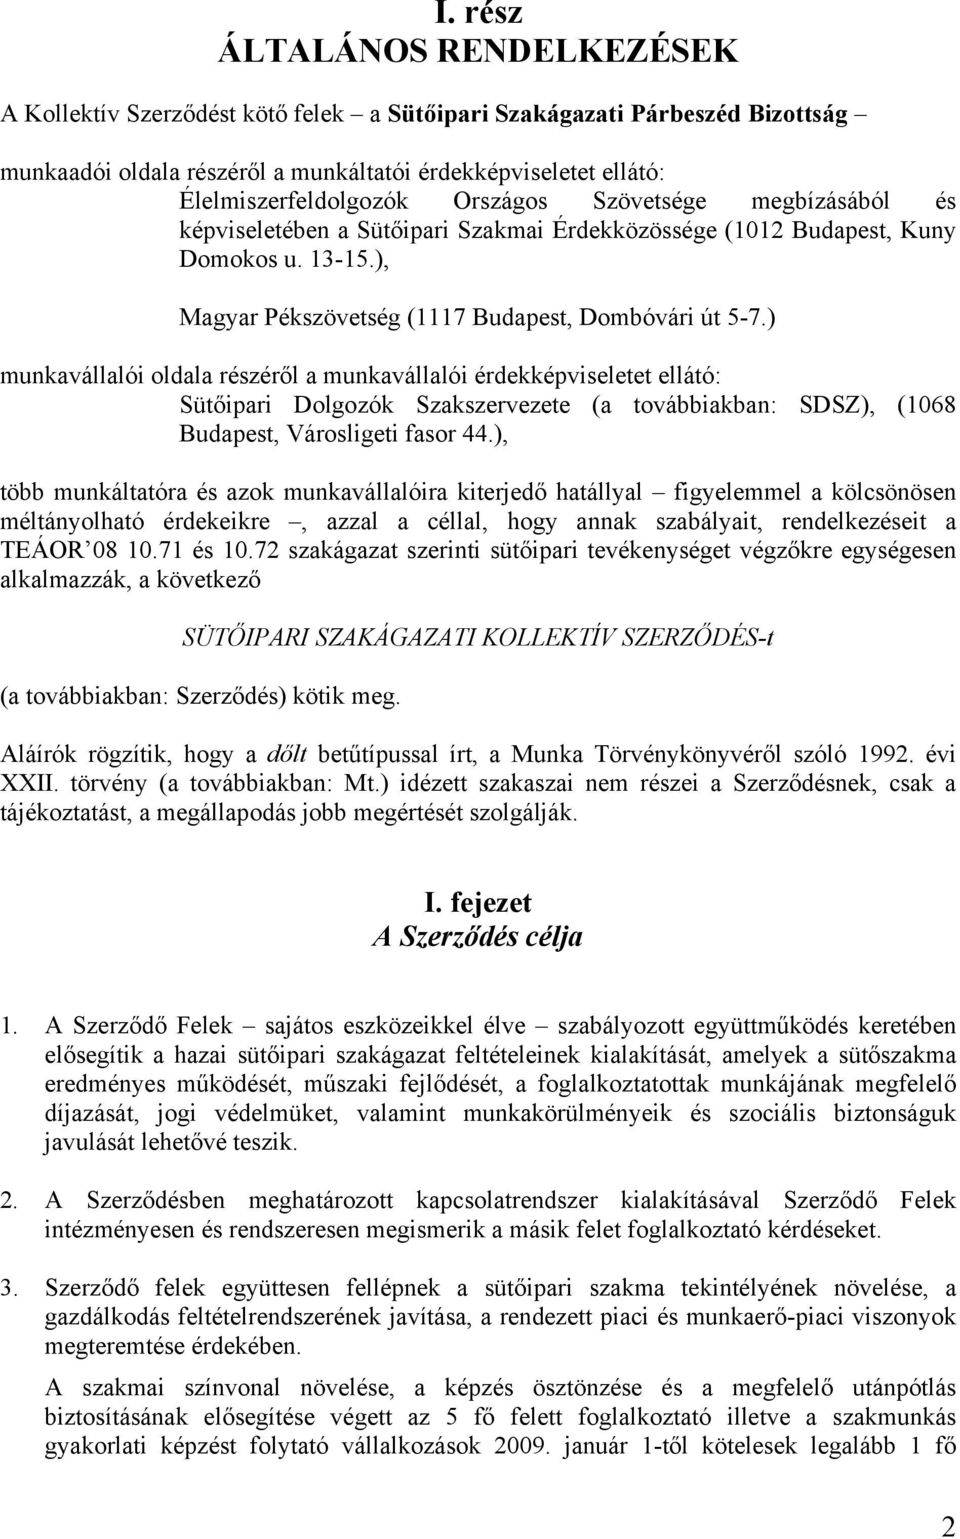 ) munkavállalói oldala részéről a munkavállalói érdekképviseletet ellátó: Sütőipari Dolgozók Szakszervezete (a továbbiakban: SDSZ), (1068 Budapest, Városligeti fasor 44.